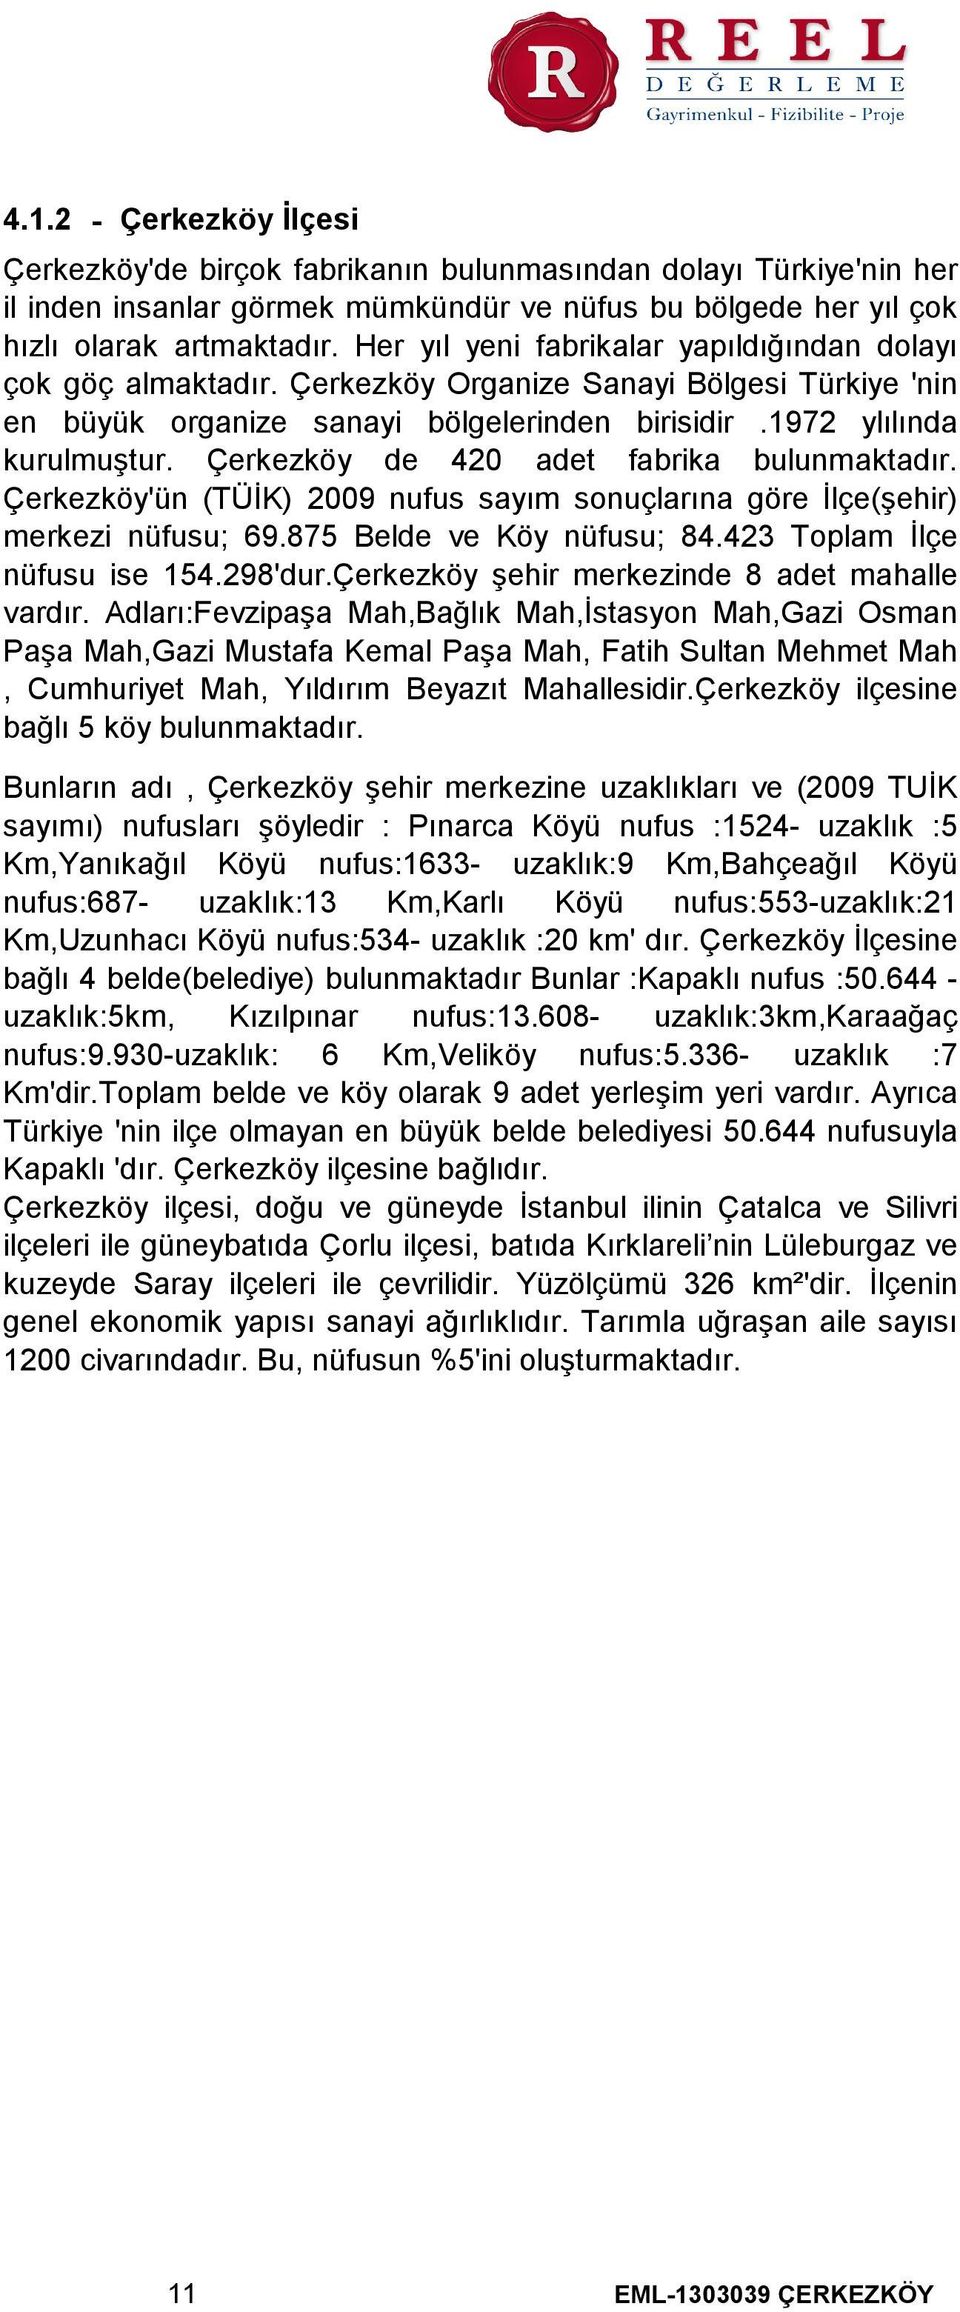 Çerkezköy de 420 adet fabrika bulunmaktadır. Çerkezköy'ün (TÜİK) 2009 nufus sayım sonuçlarına göre İlçe(şehir) merkezi nüfusu; 69.875 Belde ve Köy nüfusu; 84.423 Toplam İlçe nüfusu ise 154.298'dur.